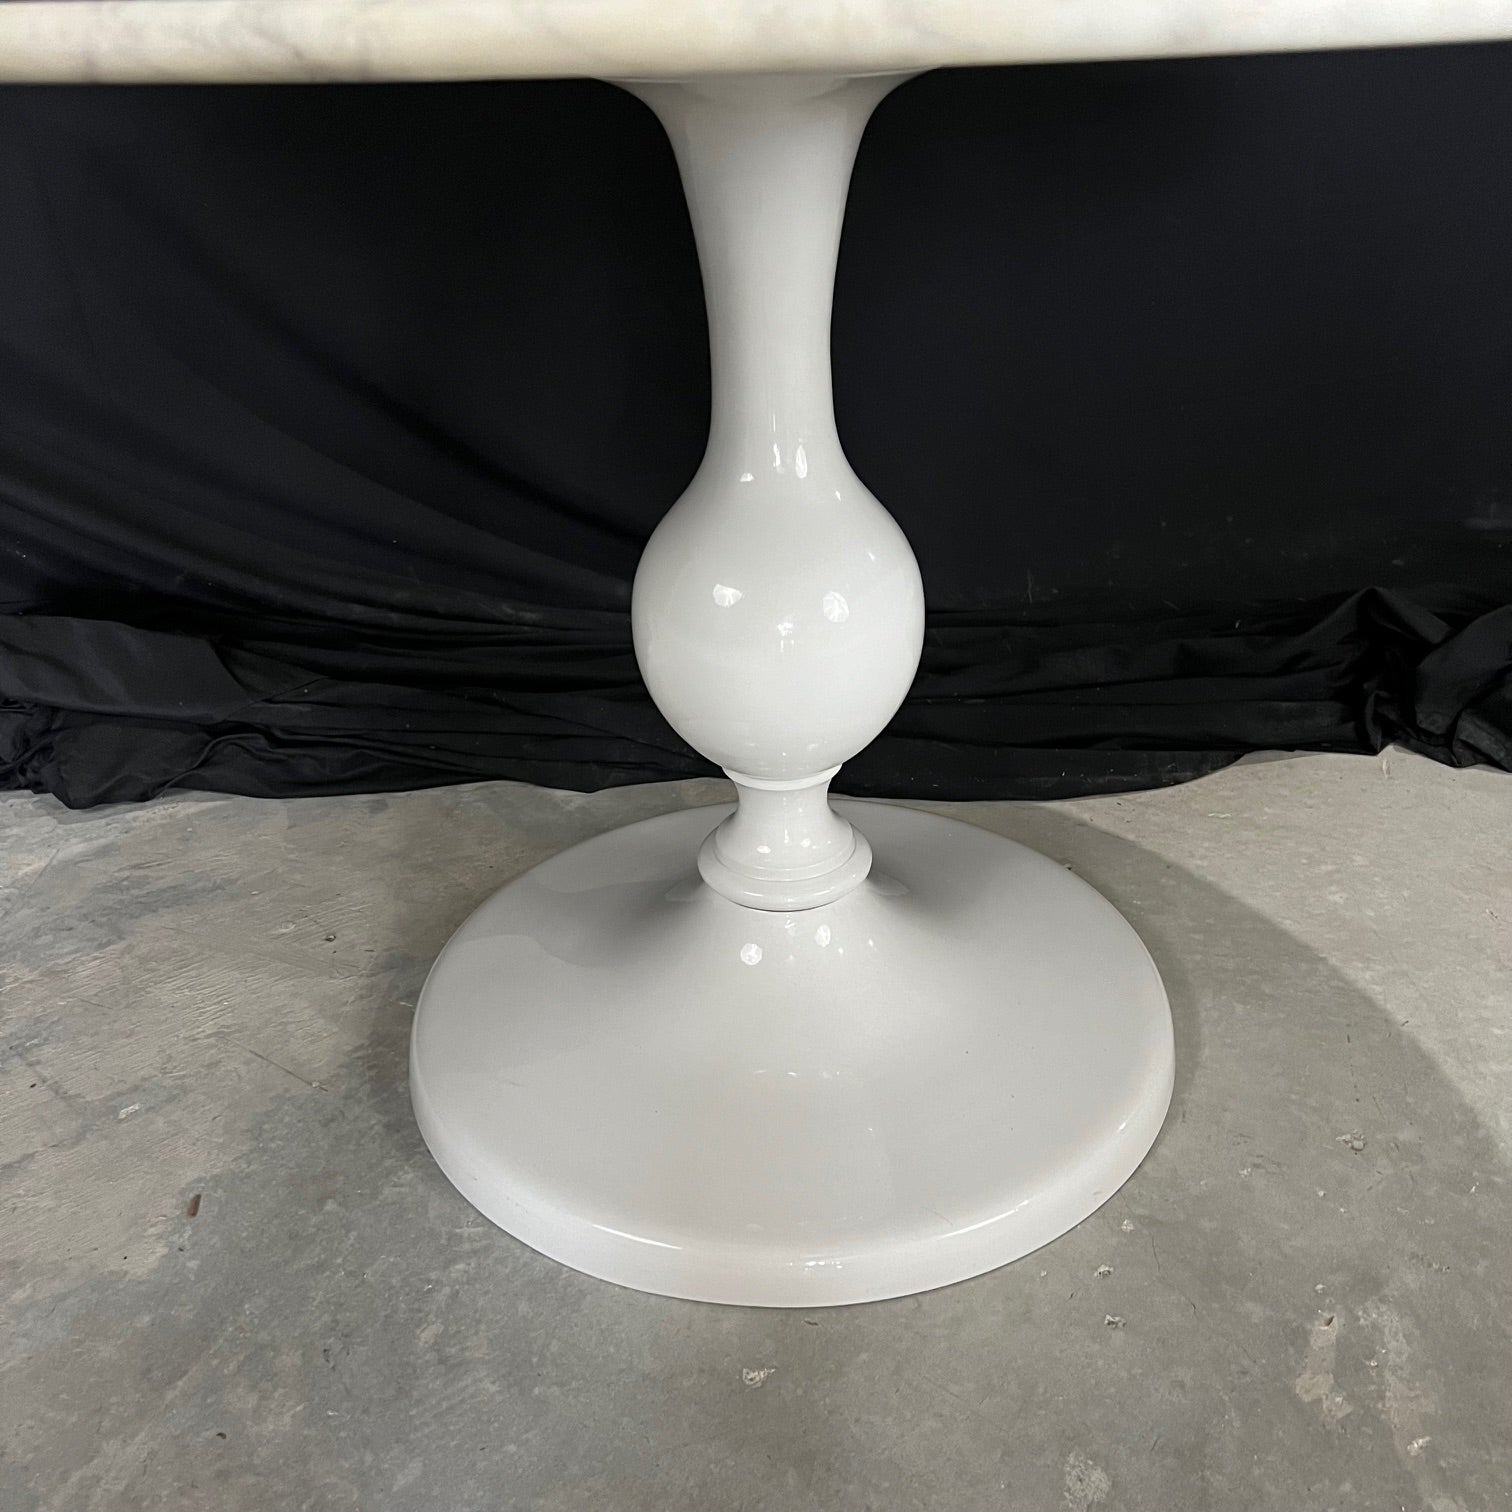 Moderner, aber klassischer runder Tisch mit Marmorplatte im Stil von Eero Saarinen, aber mit einem schönen Metall-Emaille-Sockeltisch. Wunderschöner, massiver italienischer Carrara-Marmor mit weißer und grauer, rustikaler Maserung, der ein